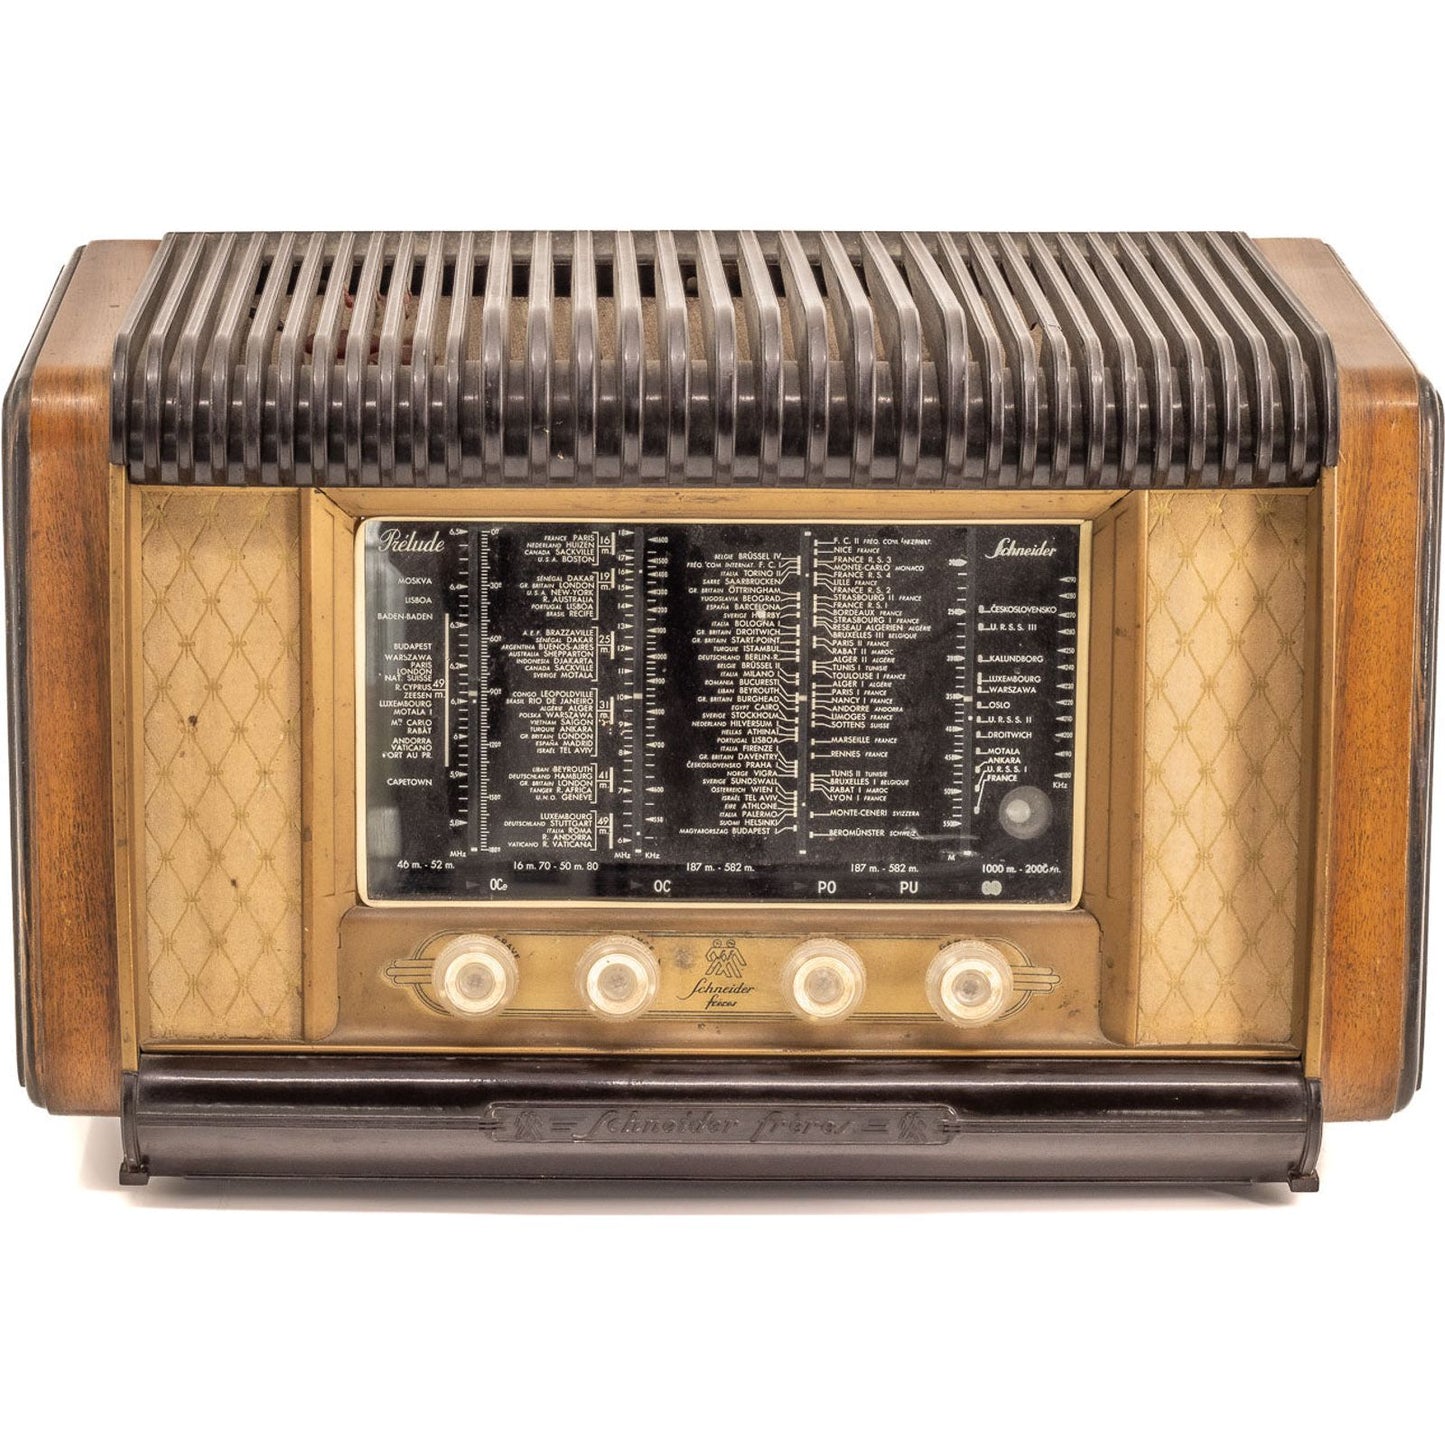 Radio Bluetooth Schneider Vintage 50’S - A.bsolument - absolument -radio - vintage - prodige - bluetooth